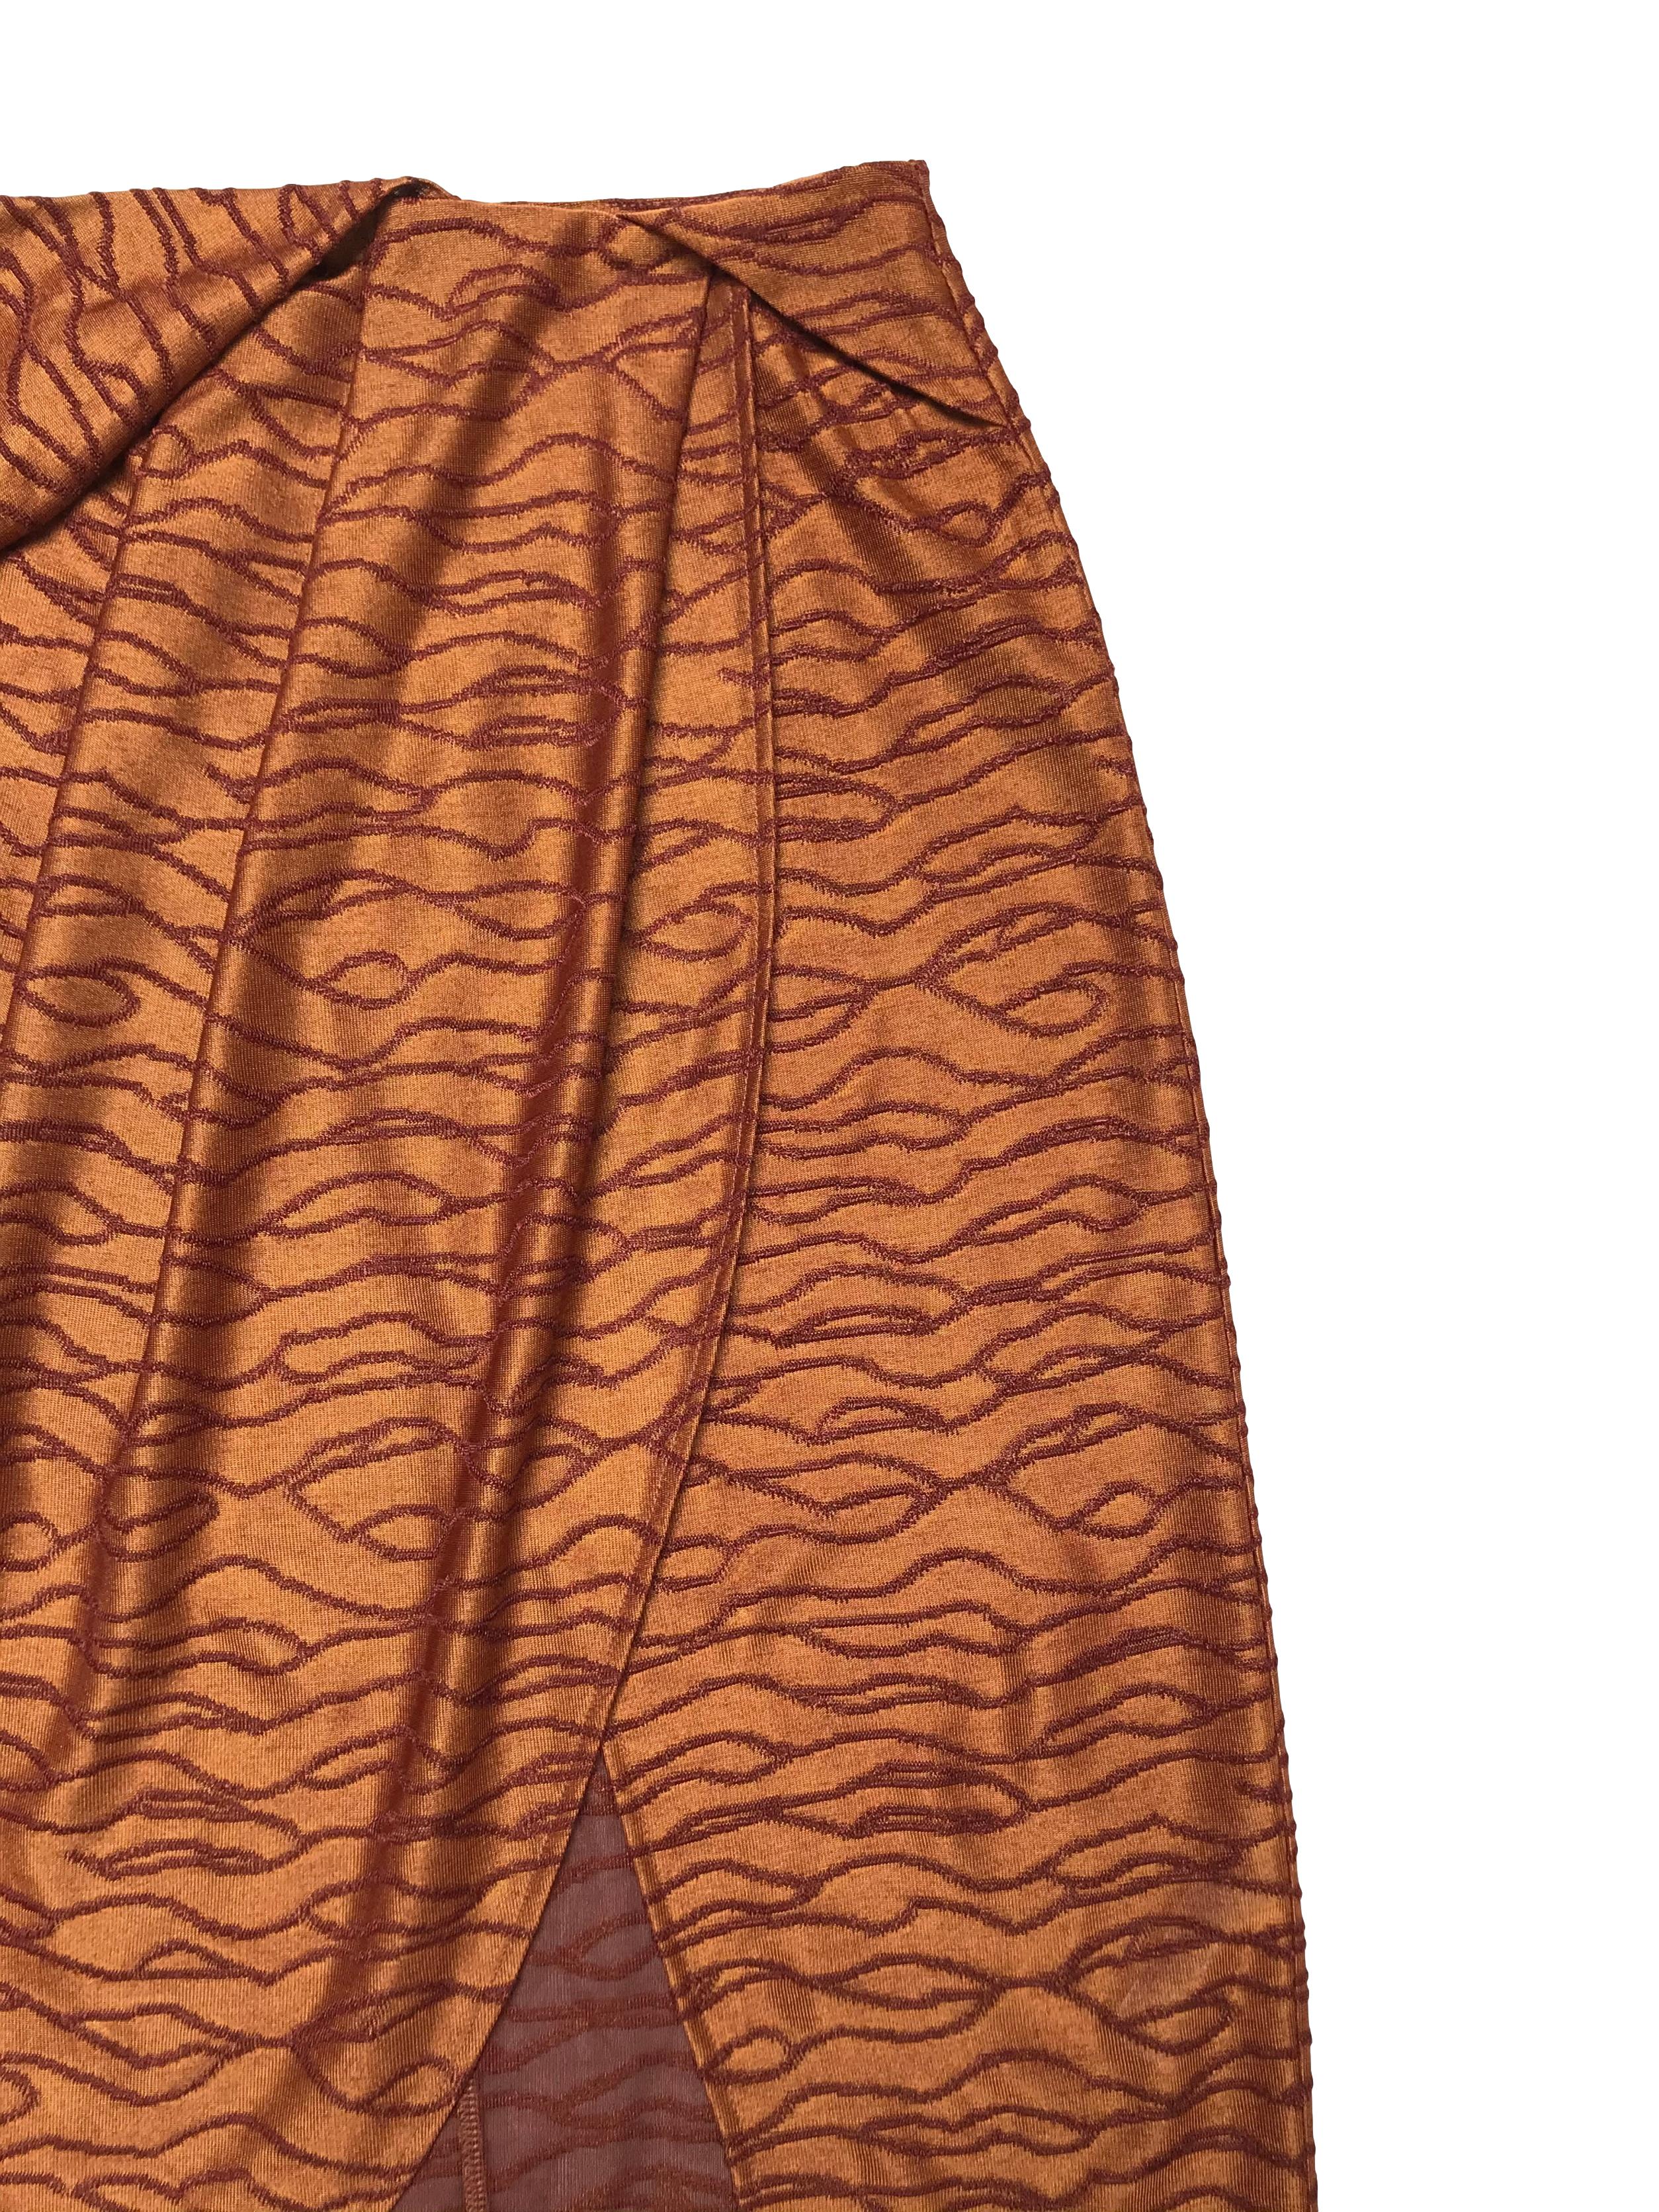 Falda midi Zara, tela de punto ocre con bordados al tono, con pliegues y cruce delantero, lleva cierre posterior. Cintura 70cm Largo 70 - 80cm